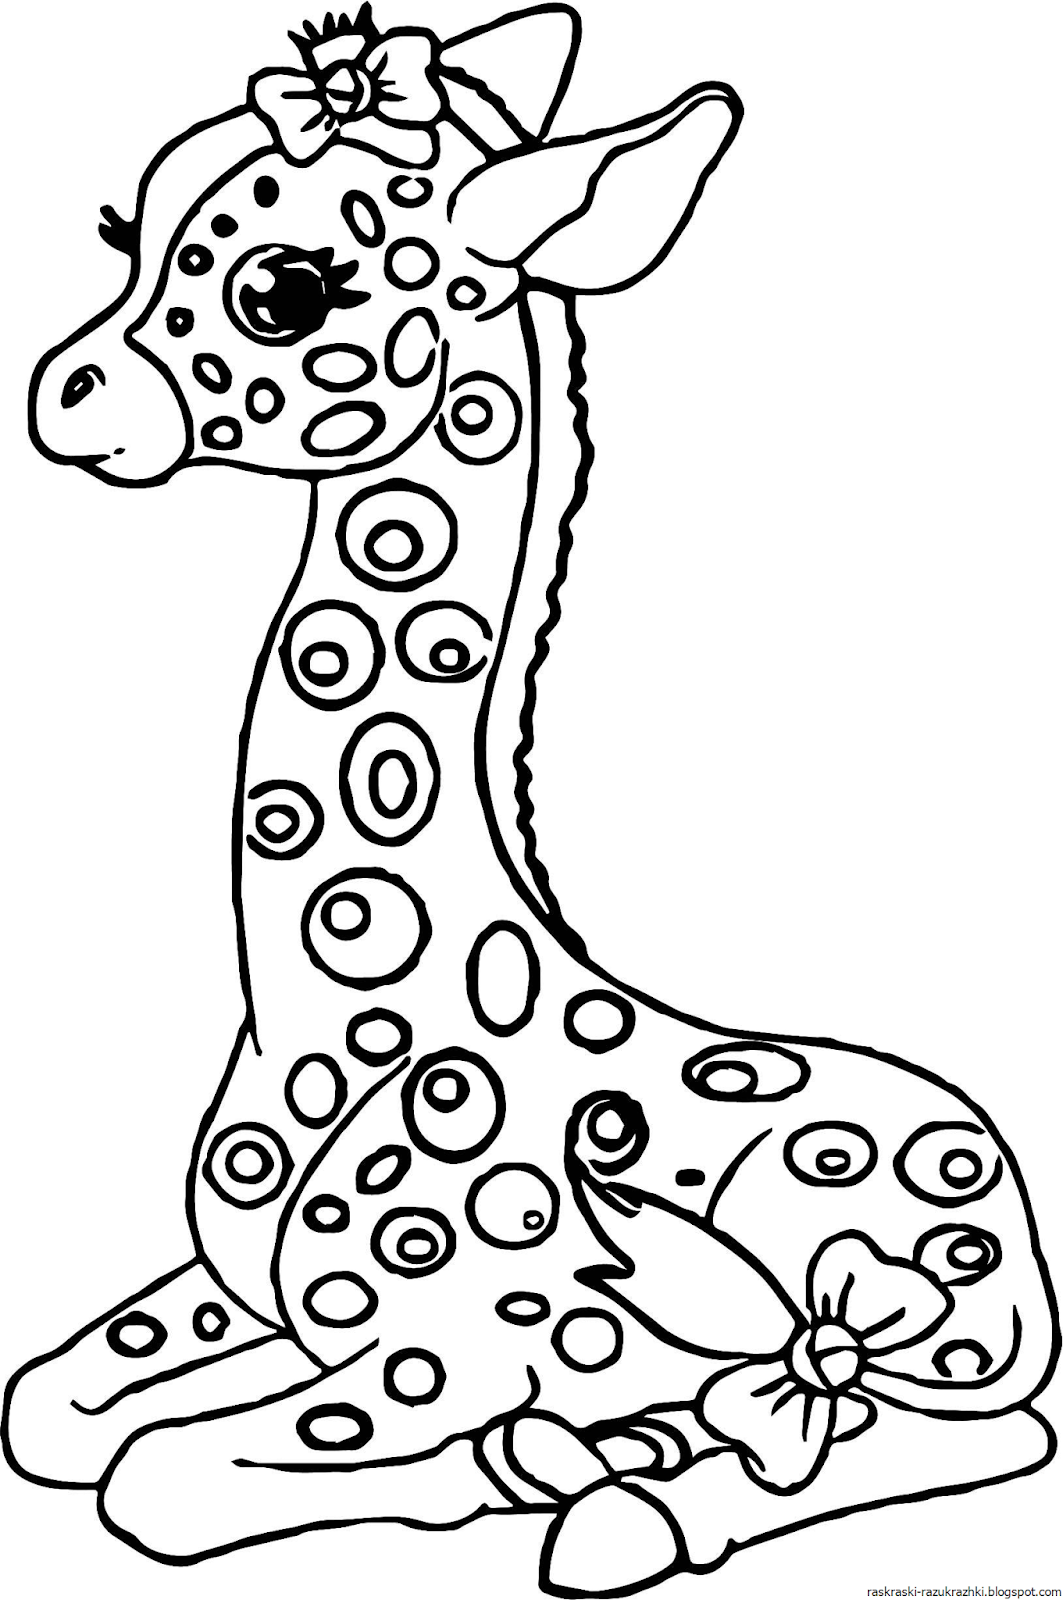 Жирафик раскраска для детей